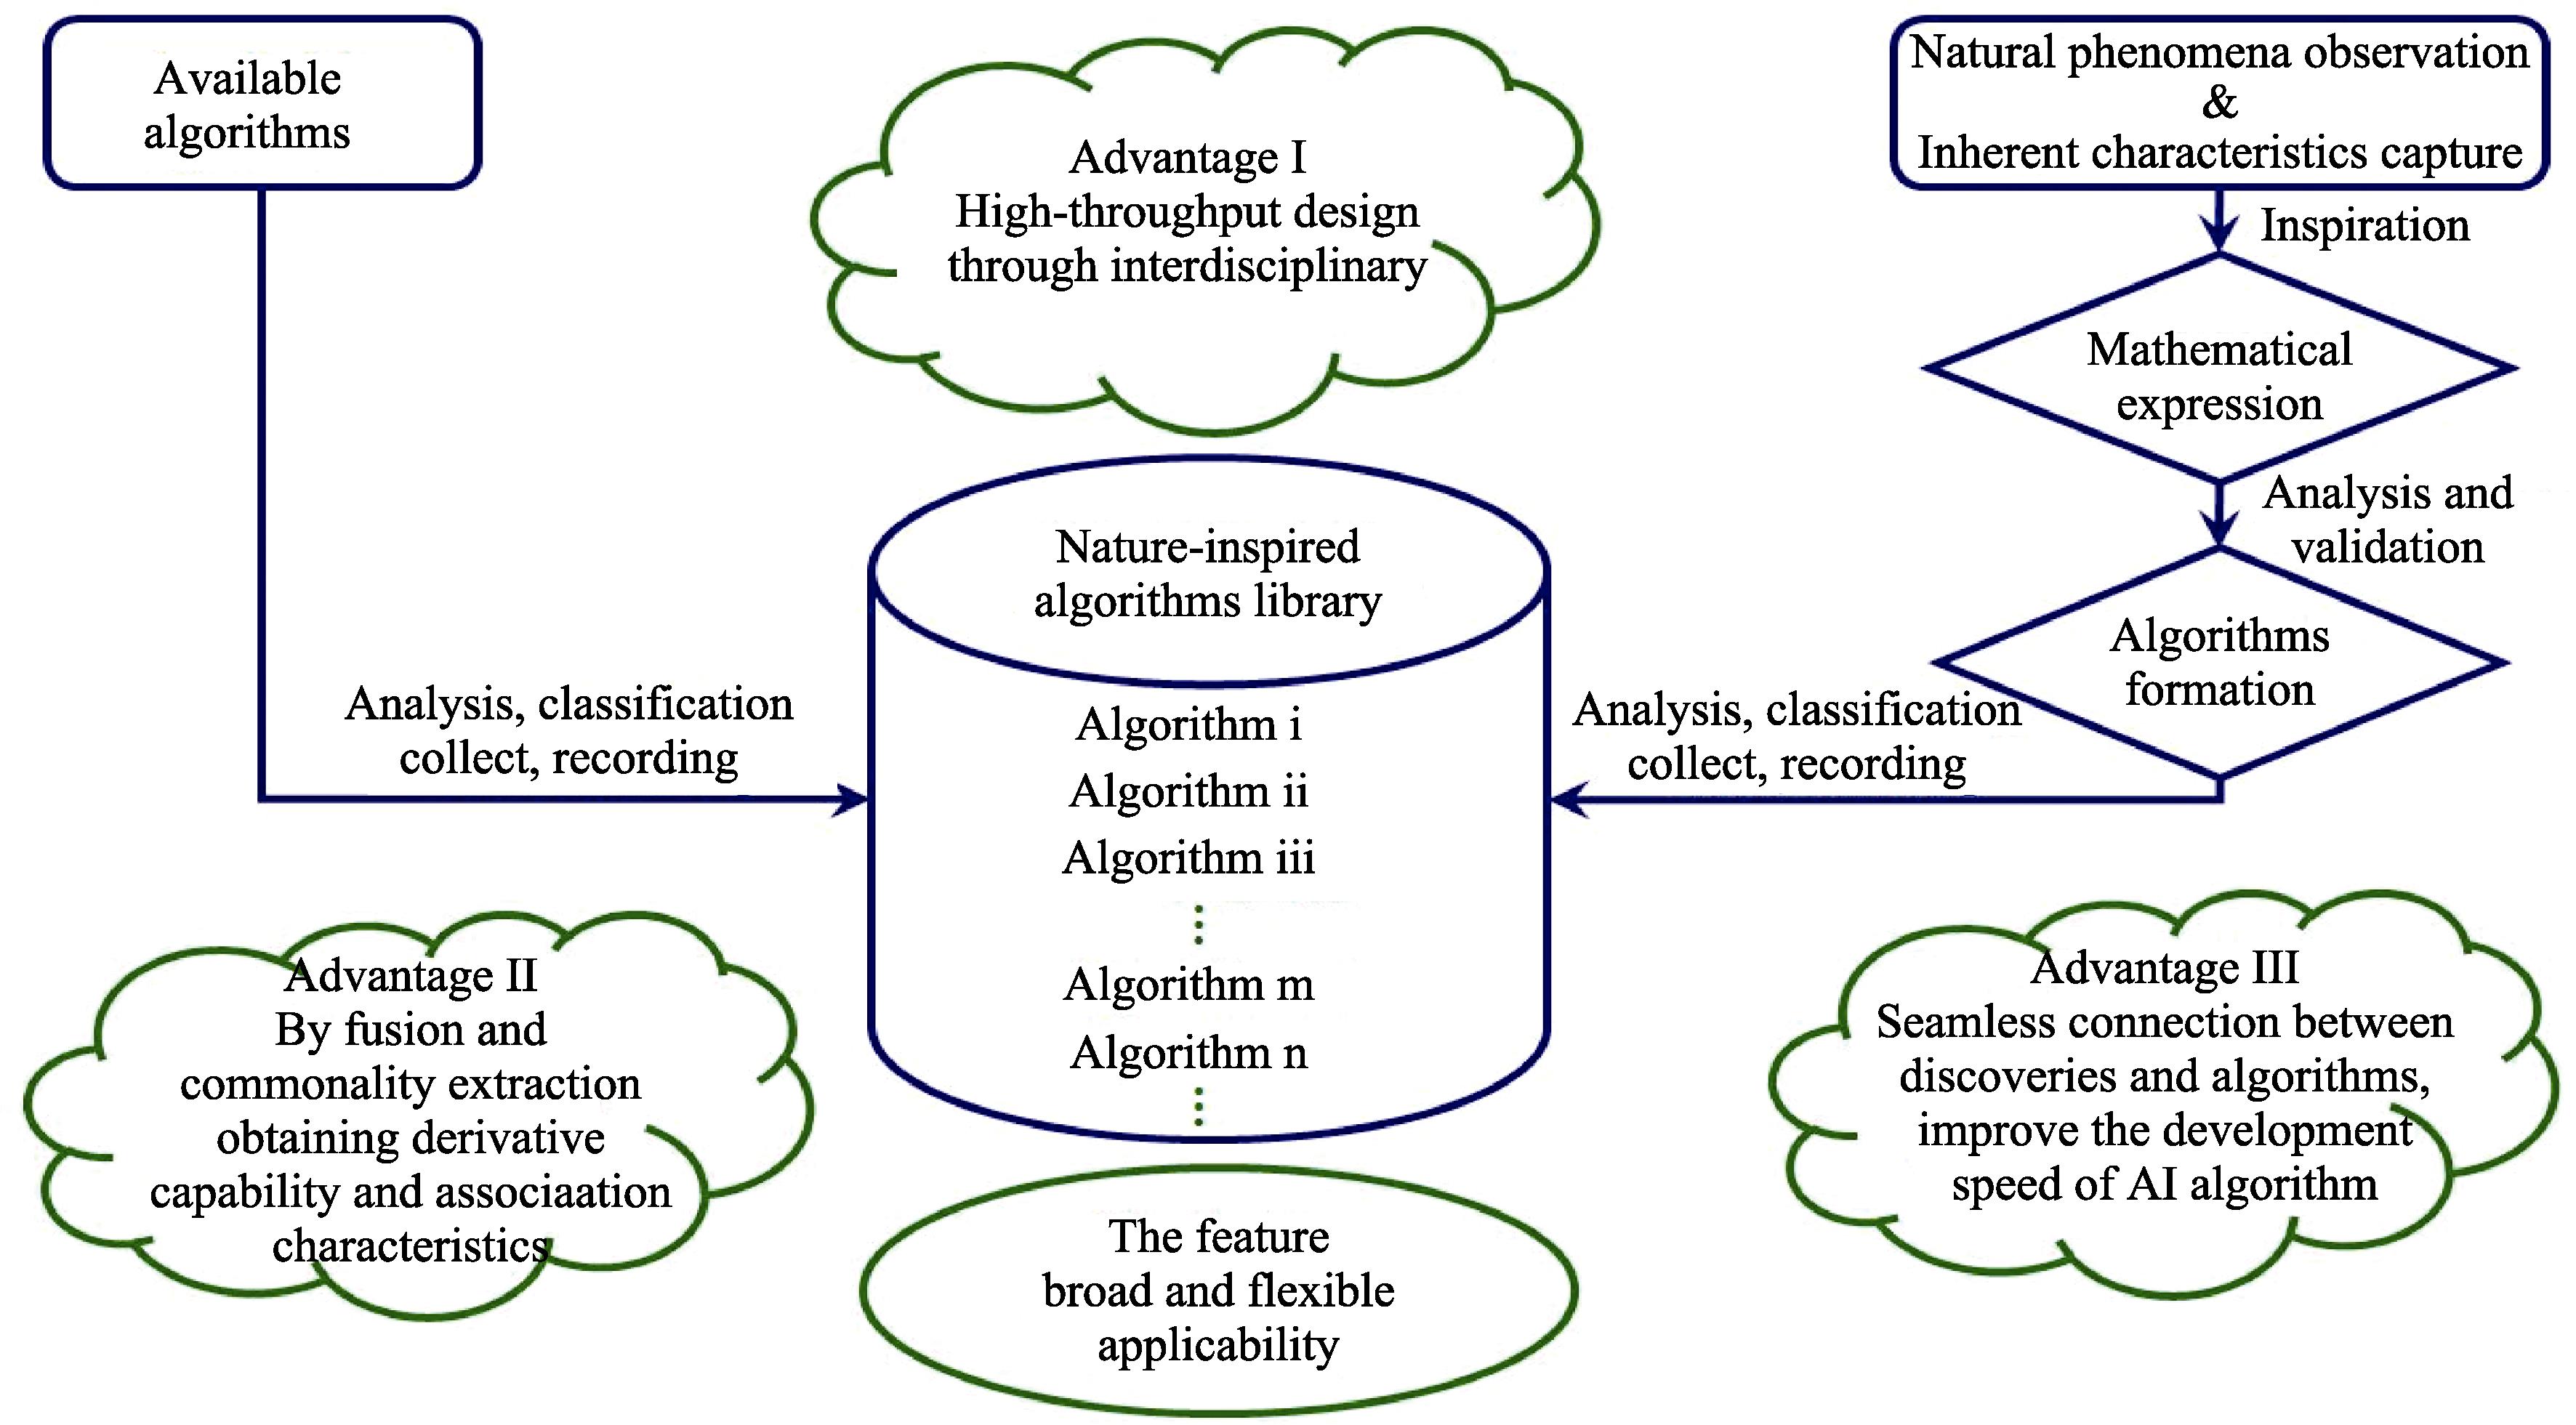 Process for algorithms construction